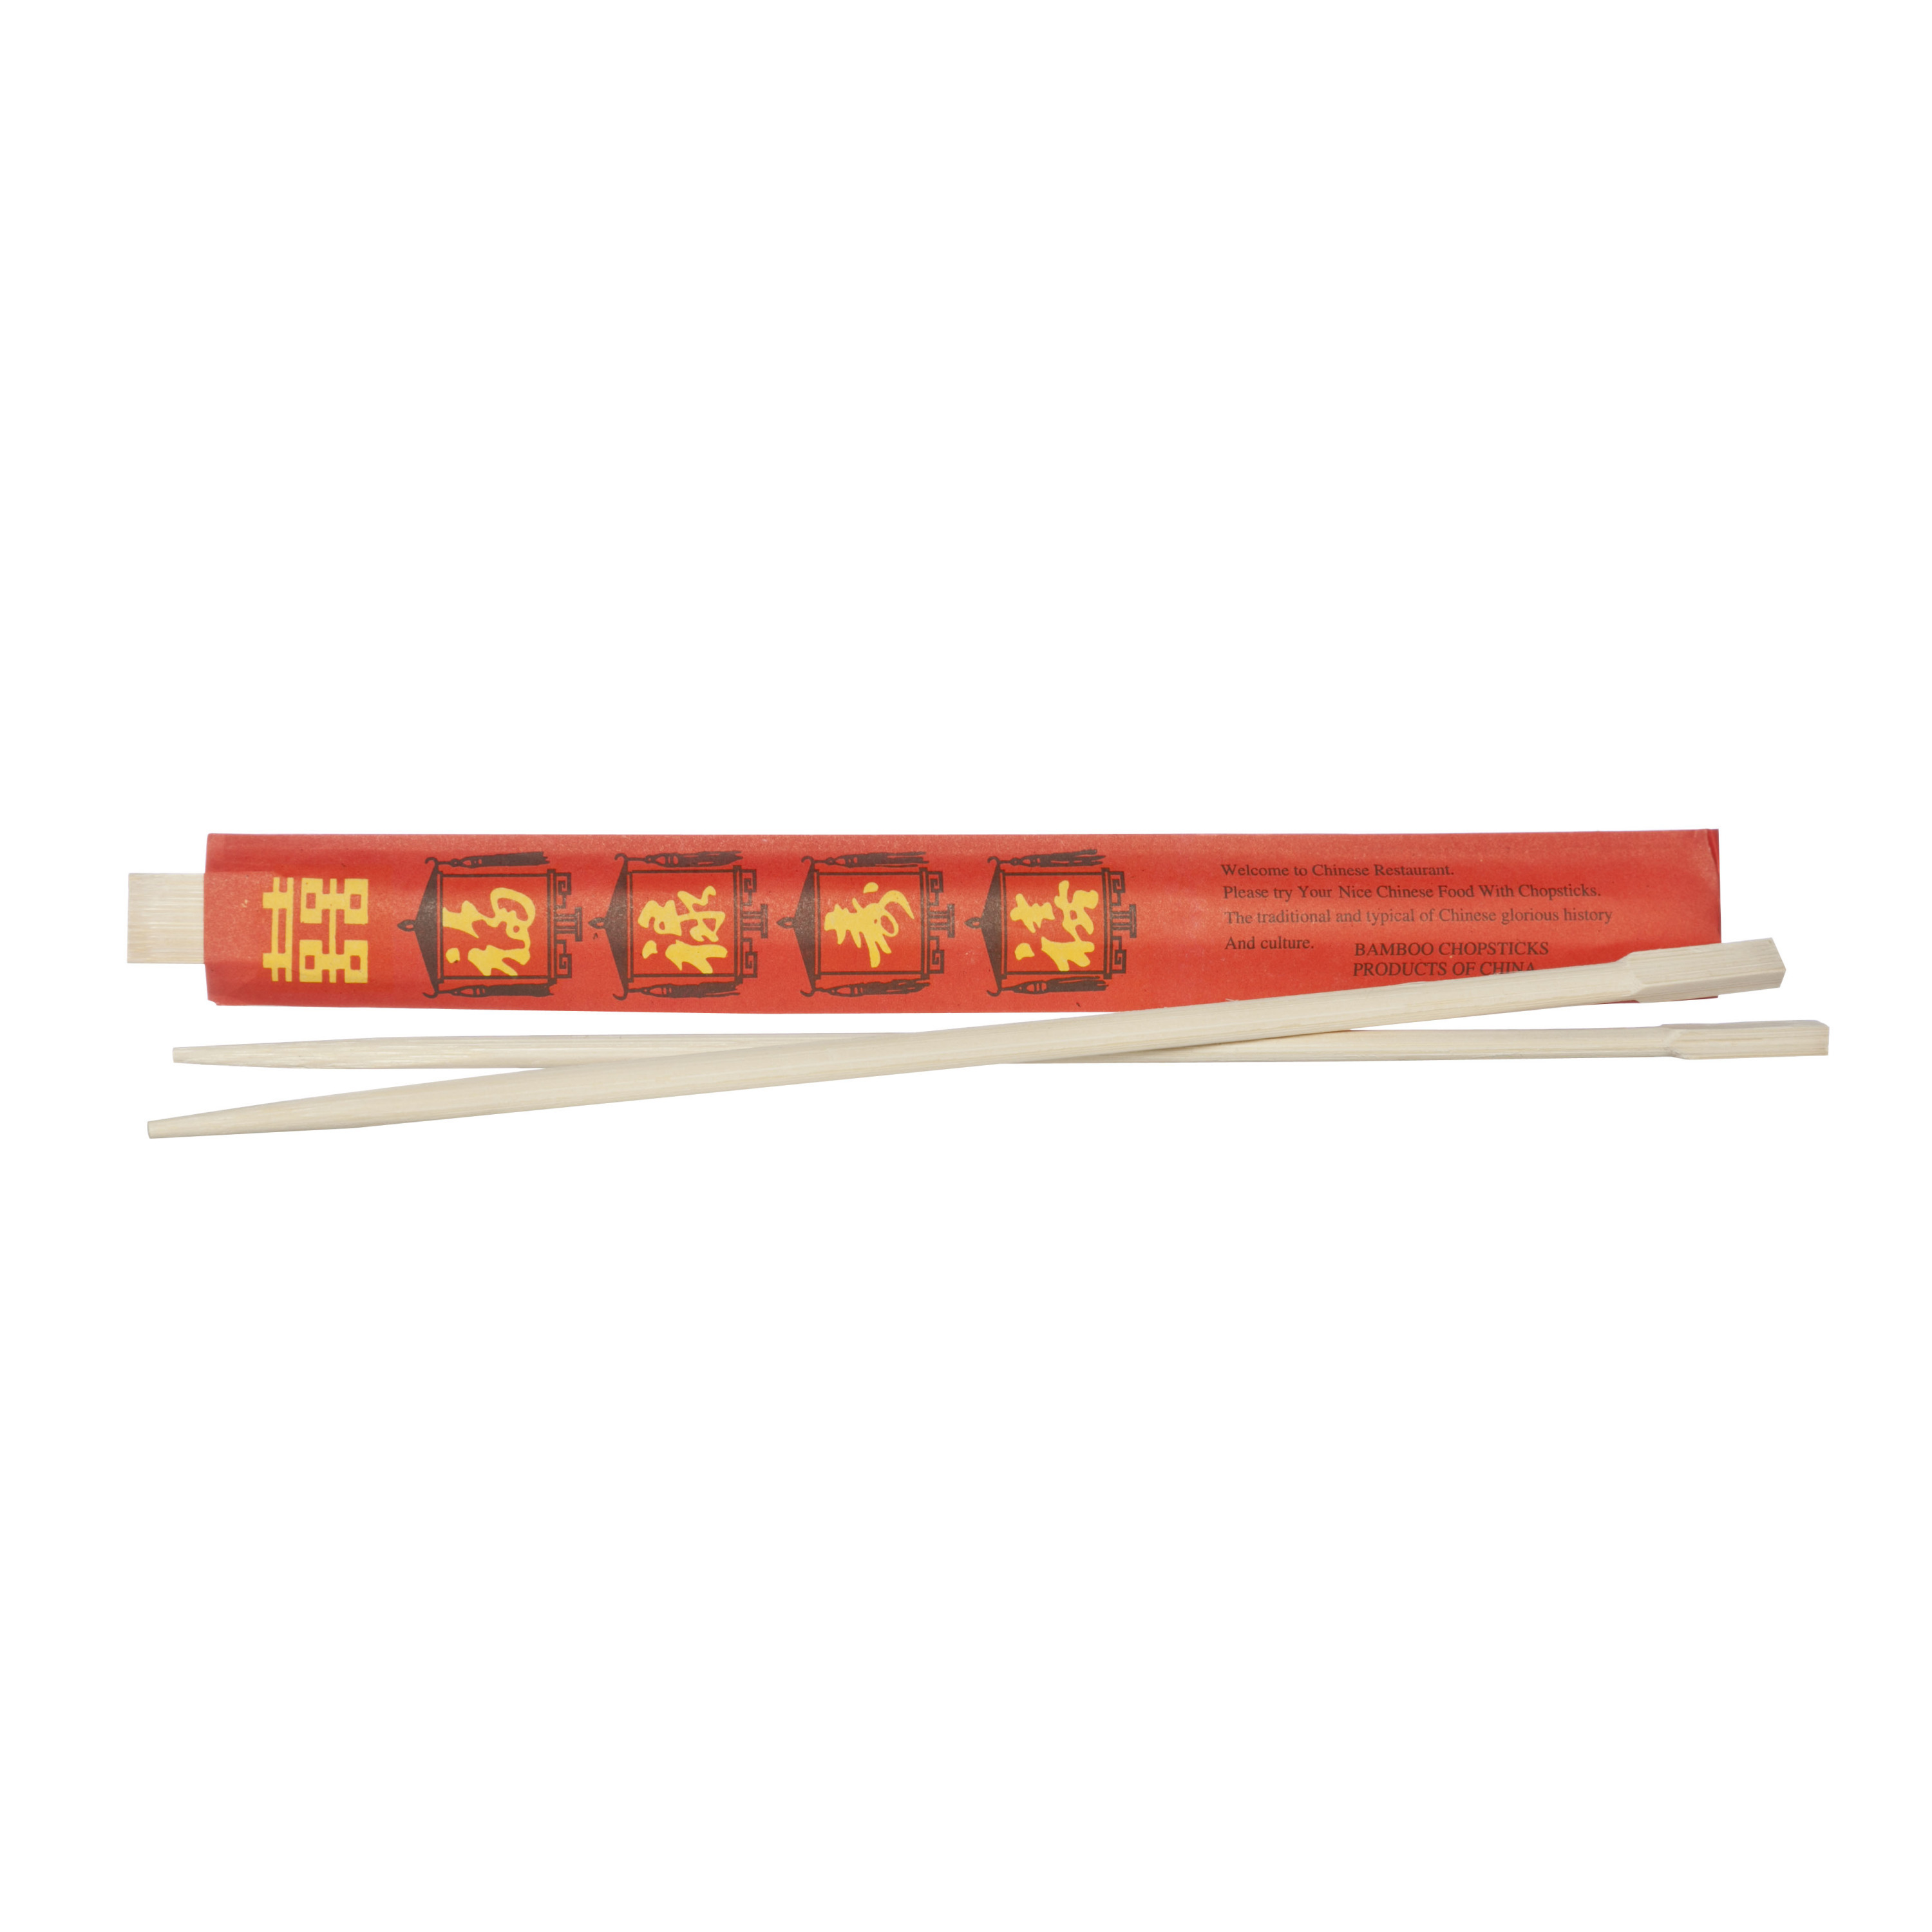 Eetstokjes gemaakt van bamboe in rood papieren zakje 2x stuks